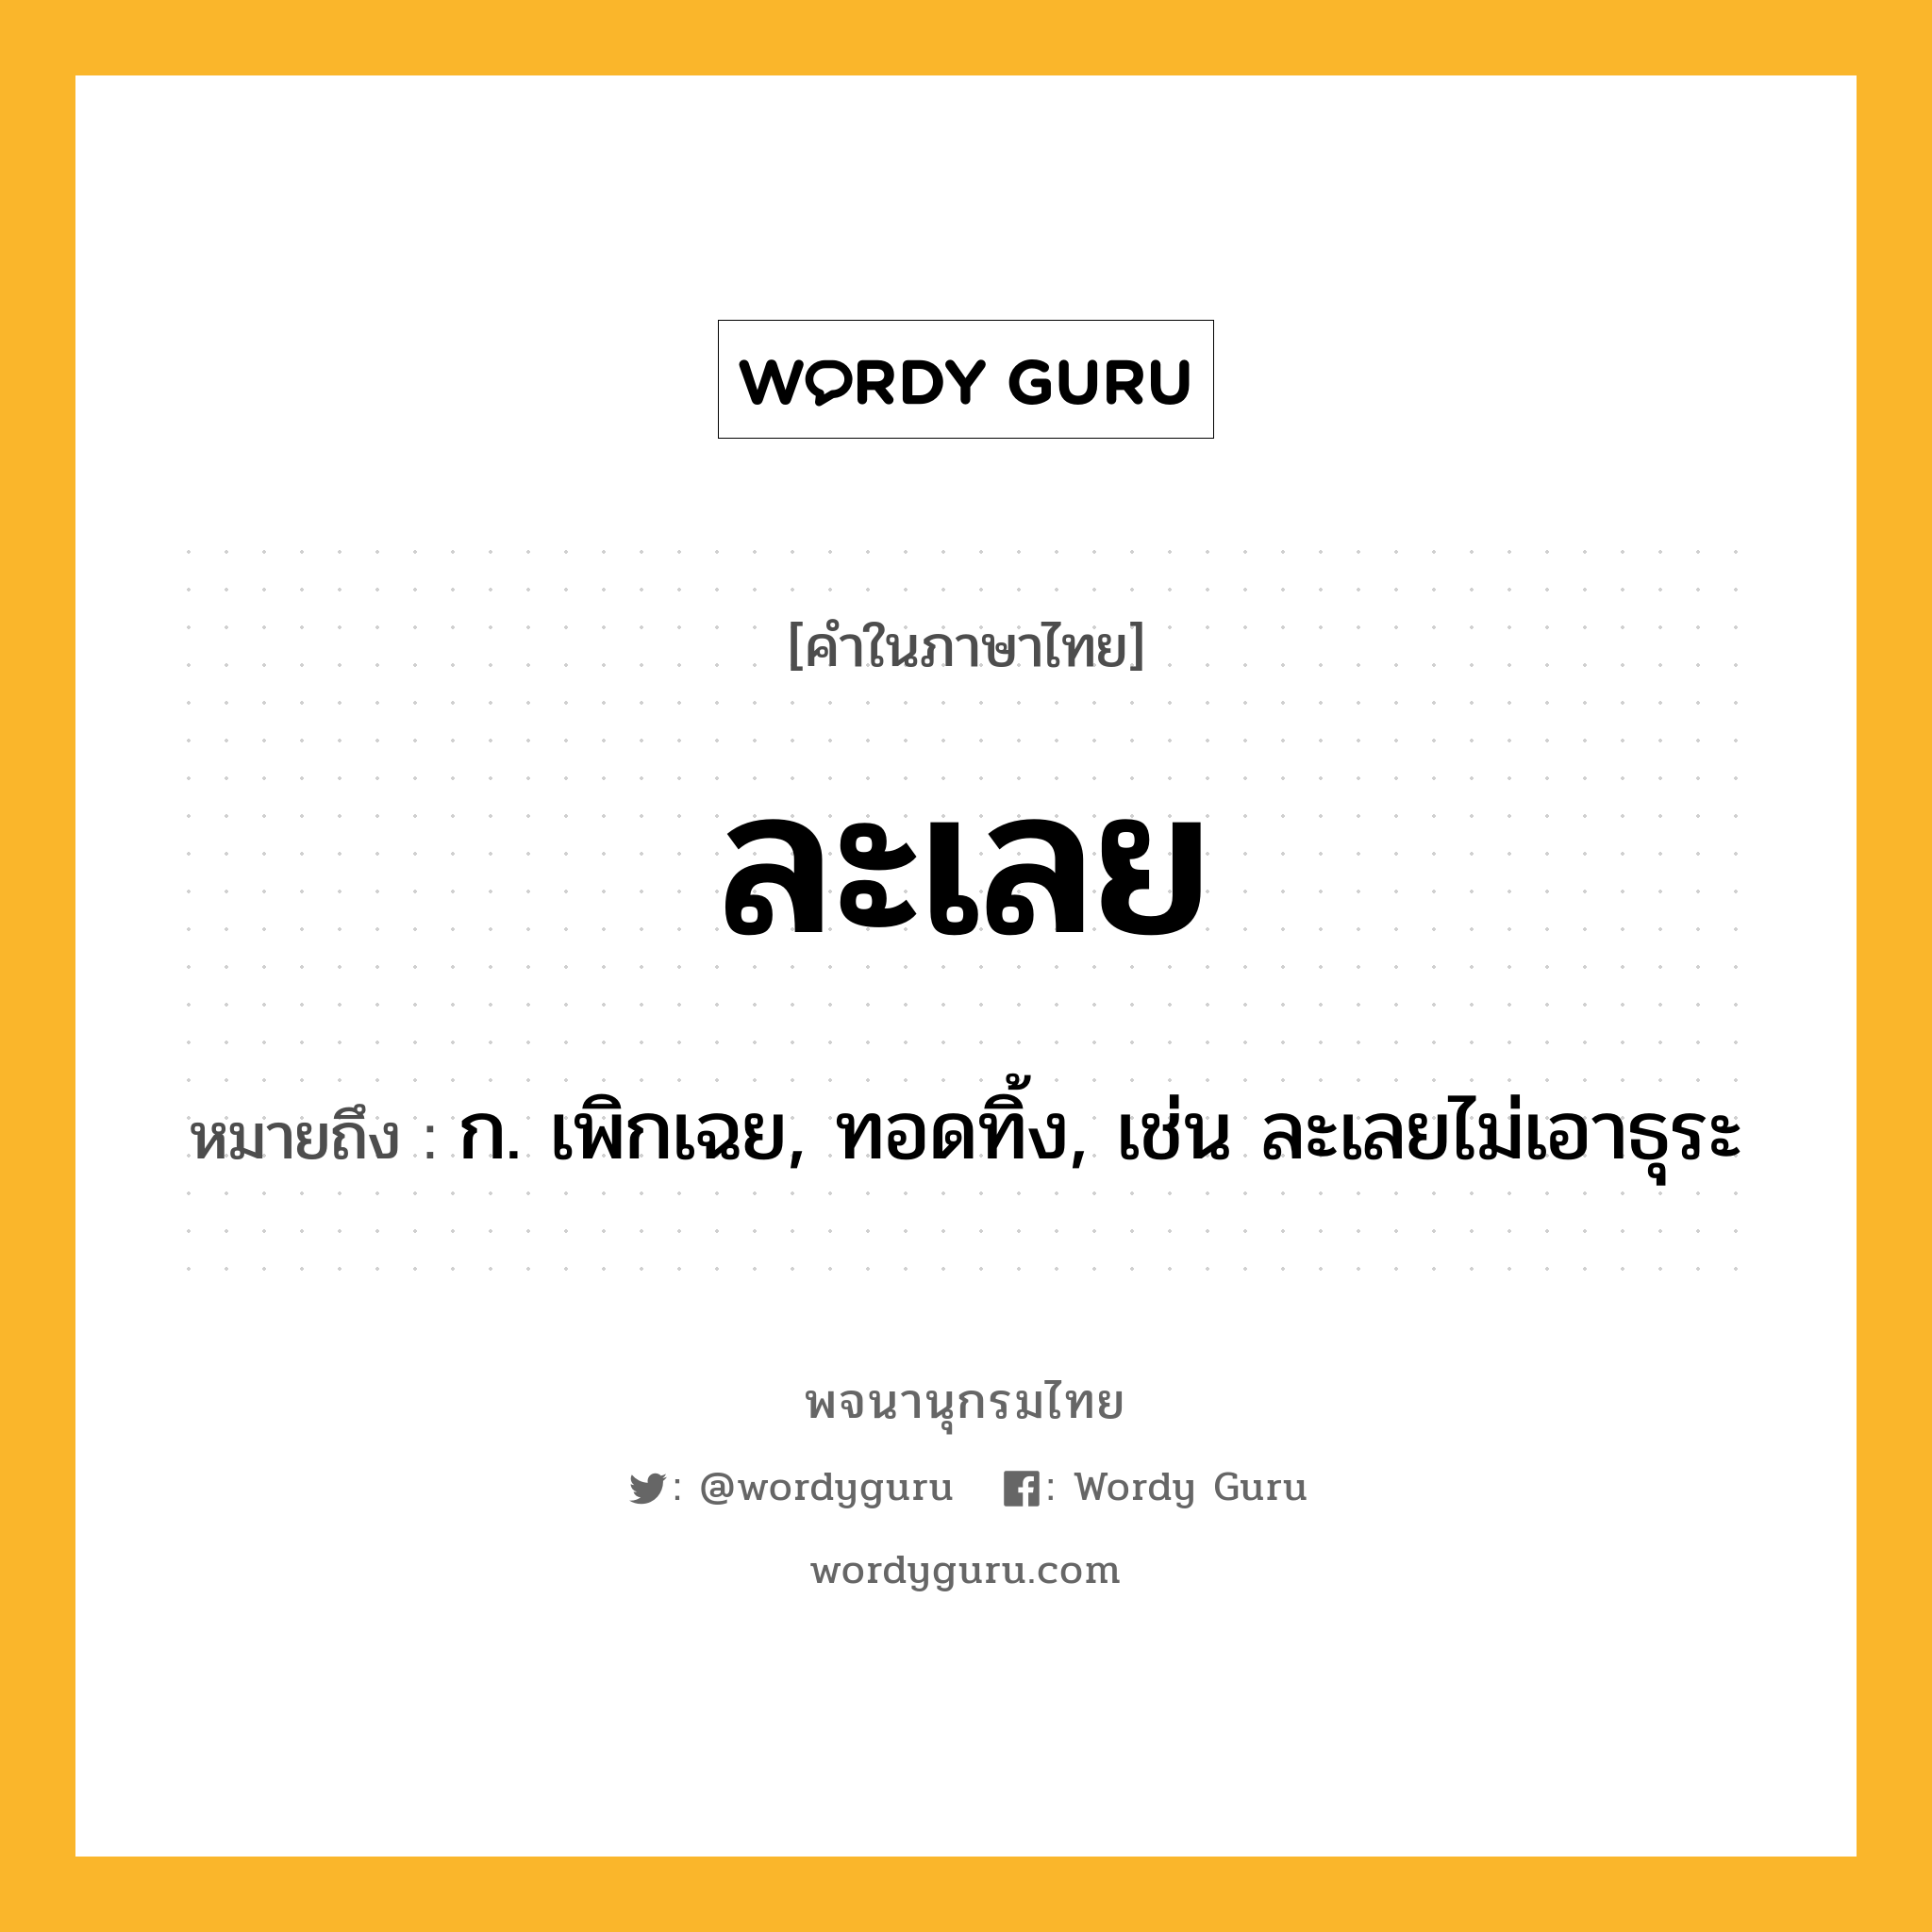 ละเลย หมายถึงอะไร?, คำในภาษาไทย ละเลย หมายถึง ก. เพิกเฉย, ทอดทิ้ง, เช่น ละเลยไม่เอาธุระ